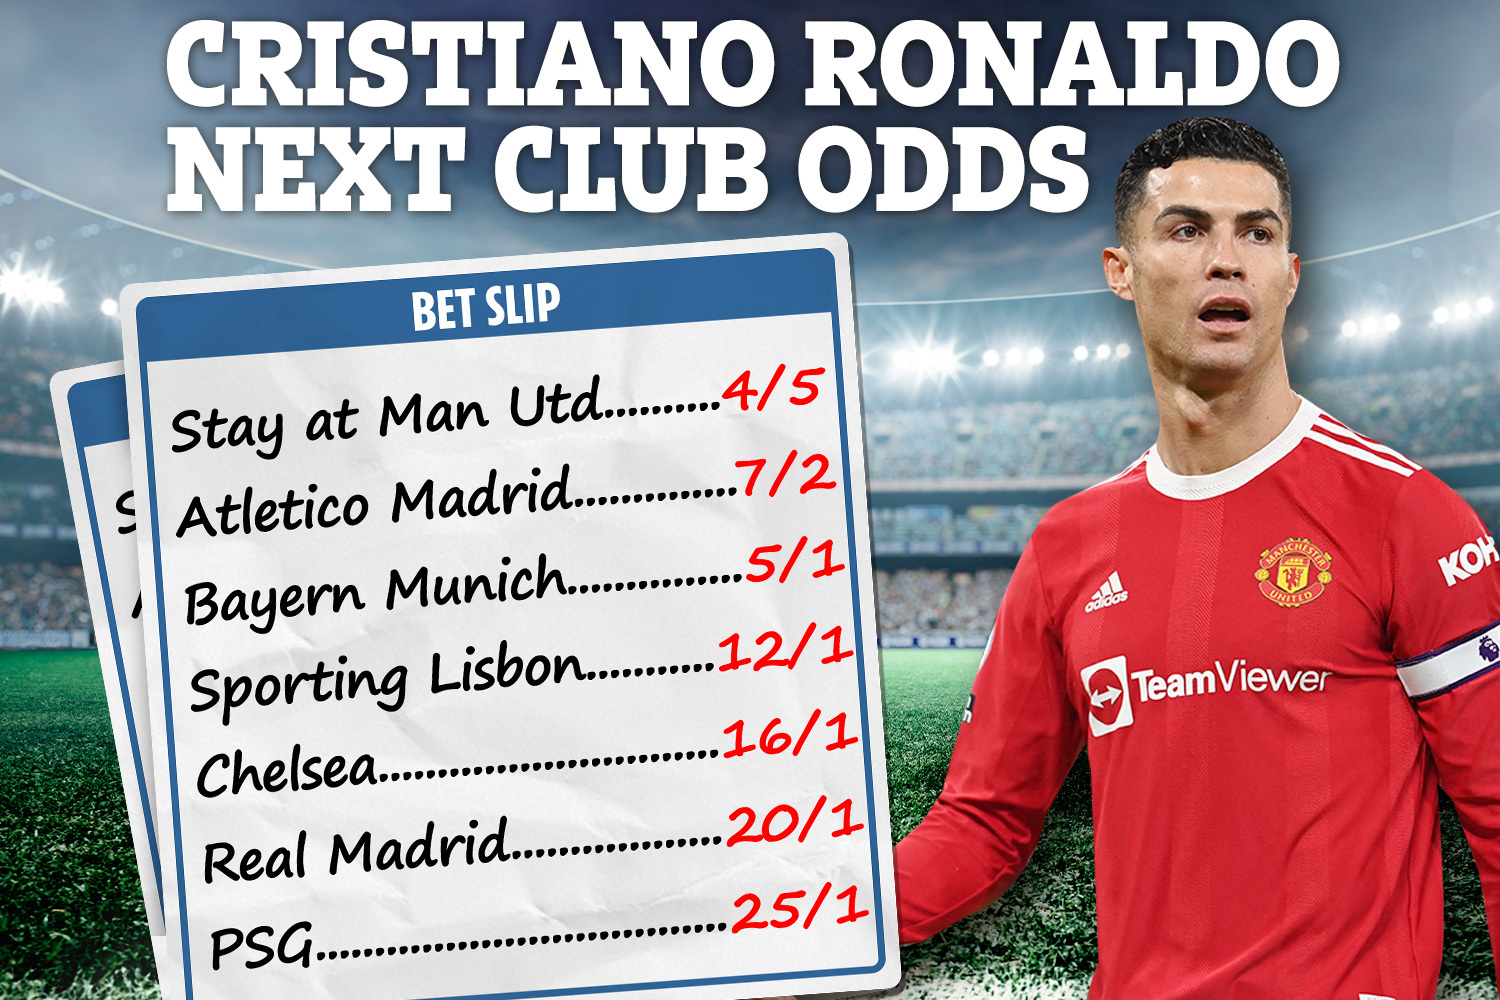 Cristiano Ronaldo next club odds with Sky Bet